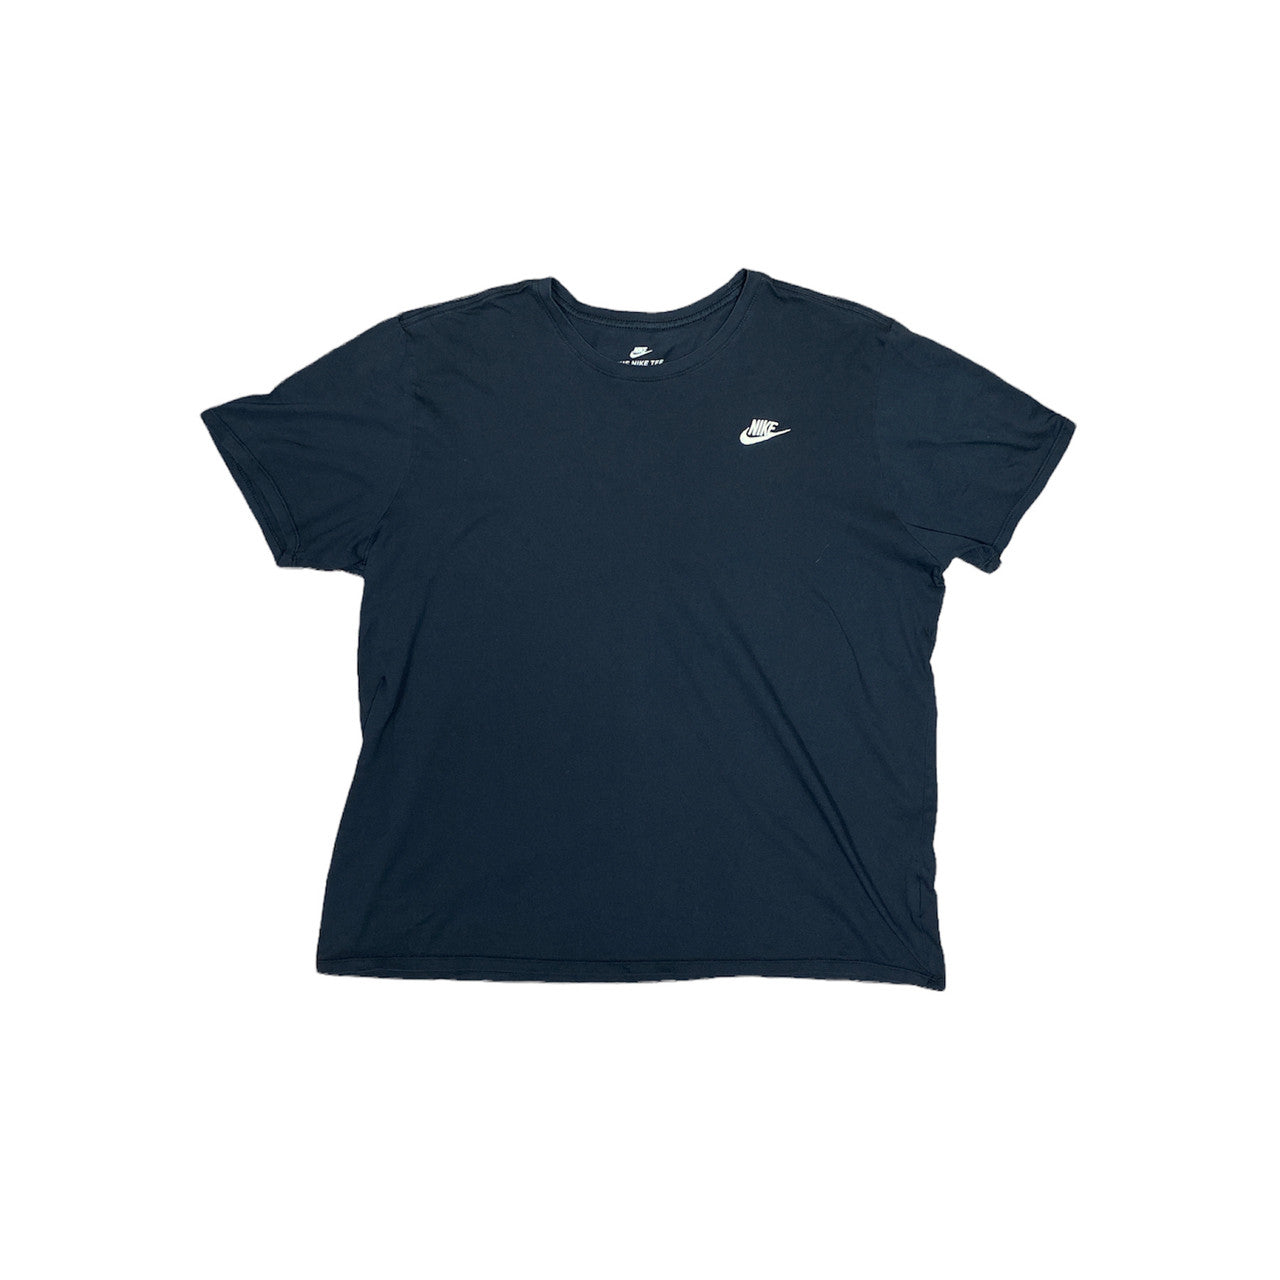 Nike Small Logo Tshirt Black